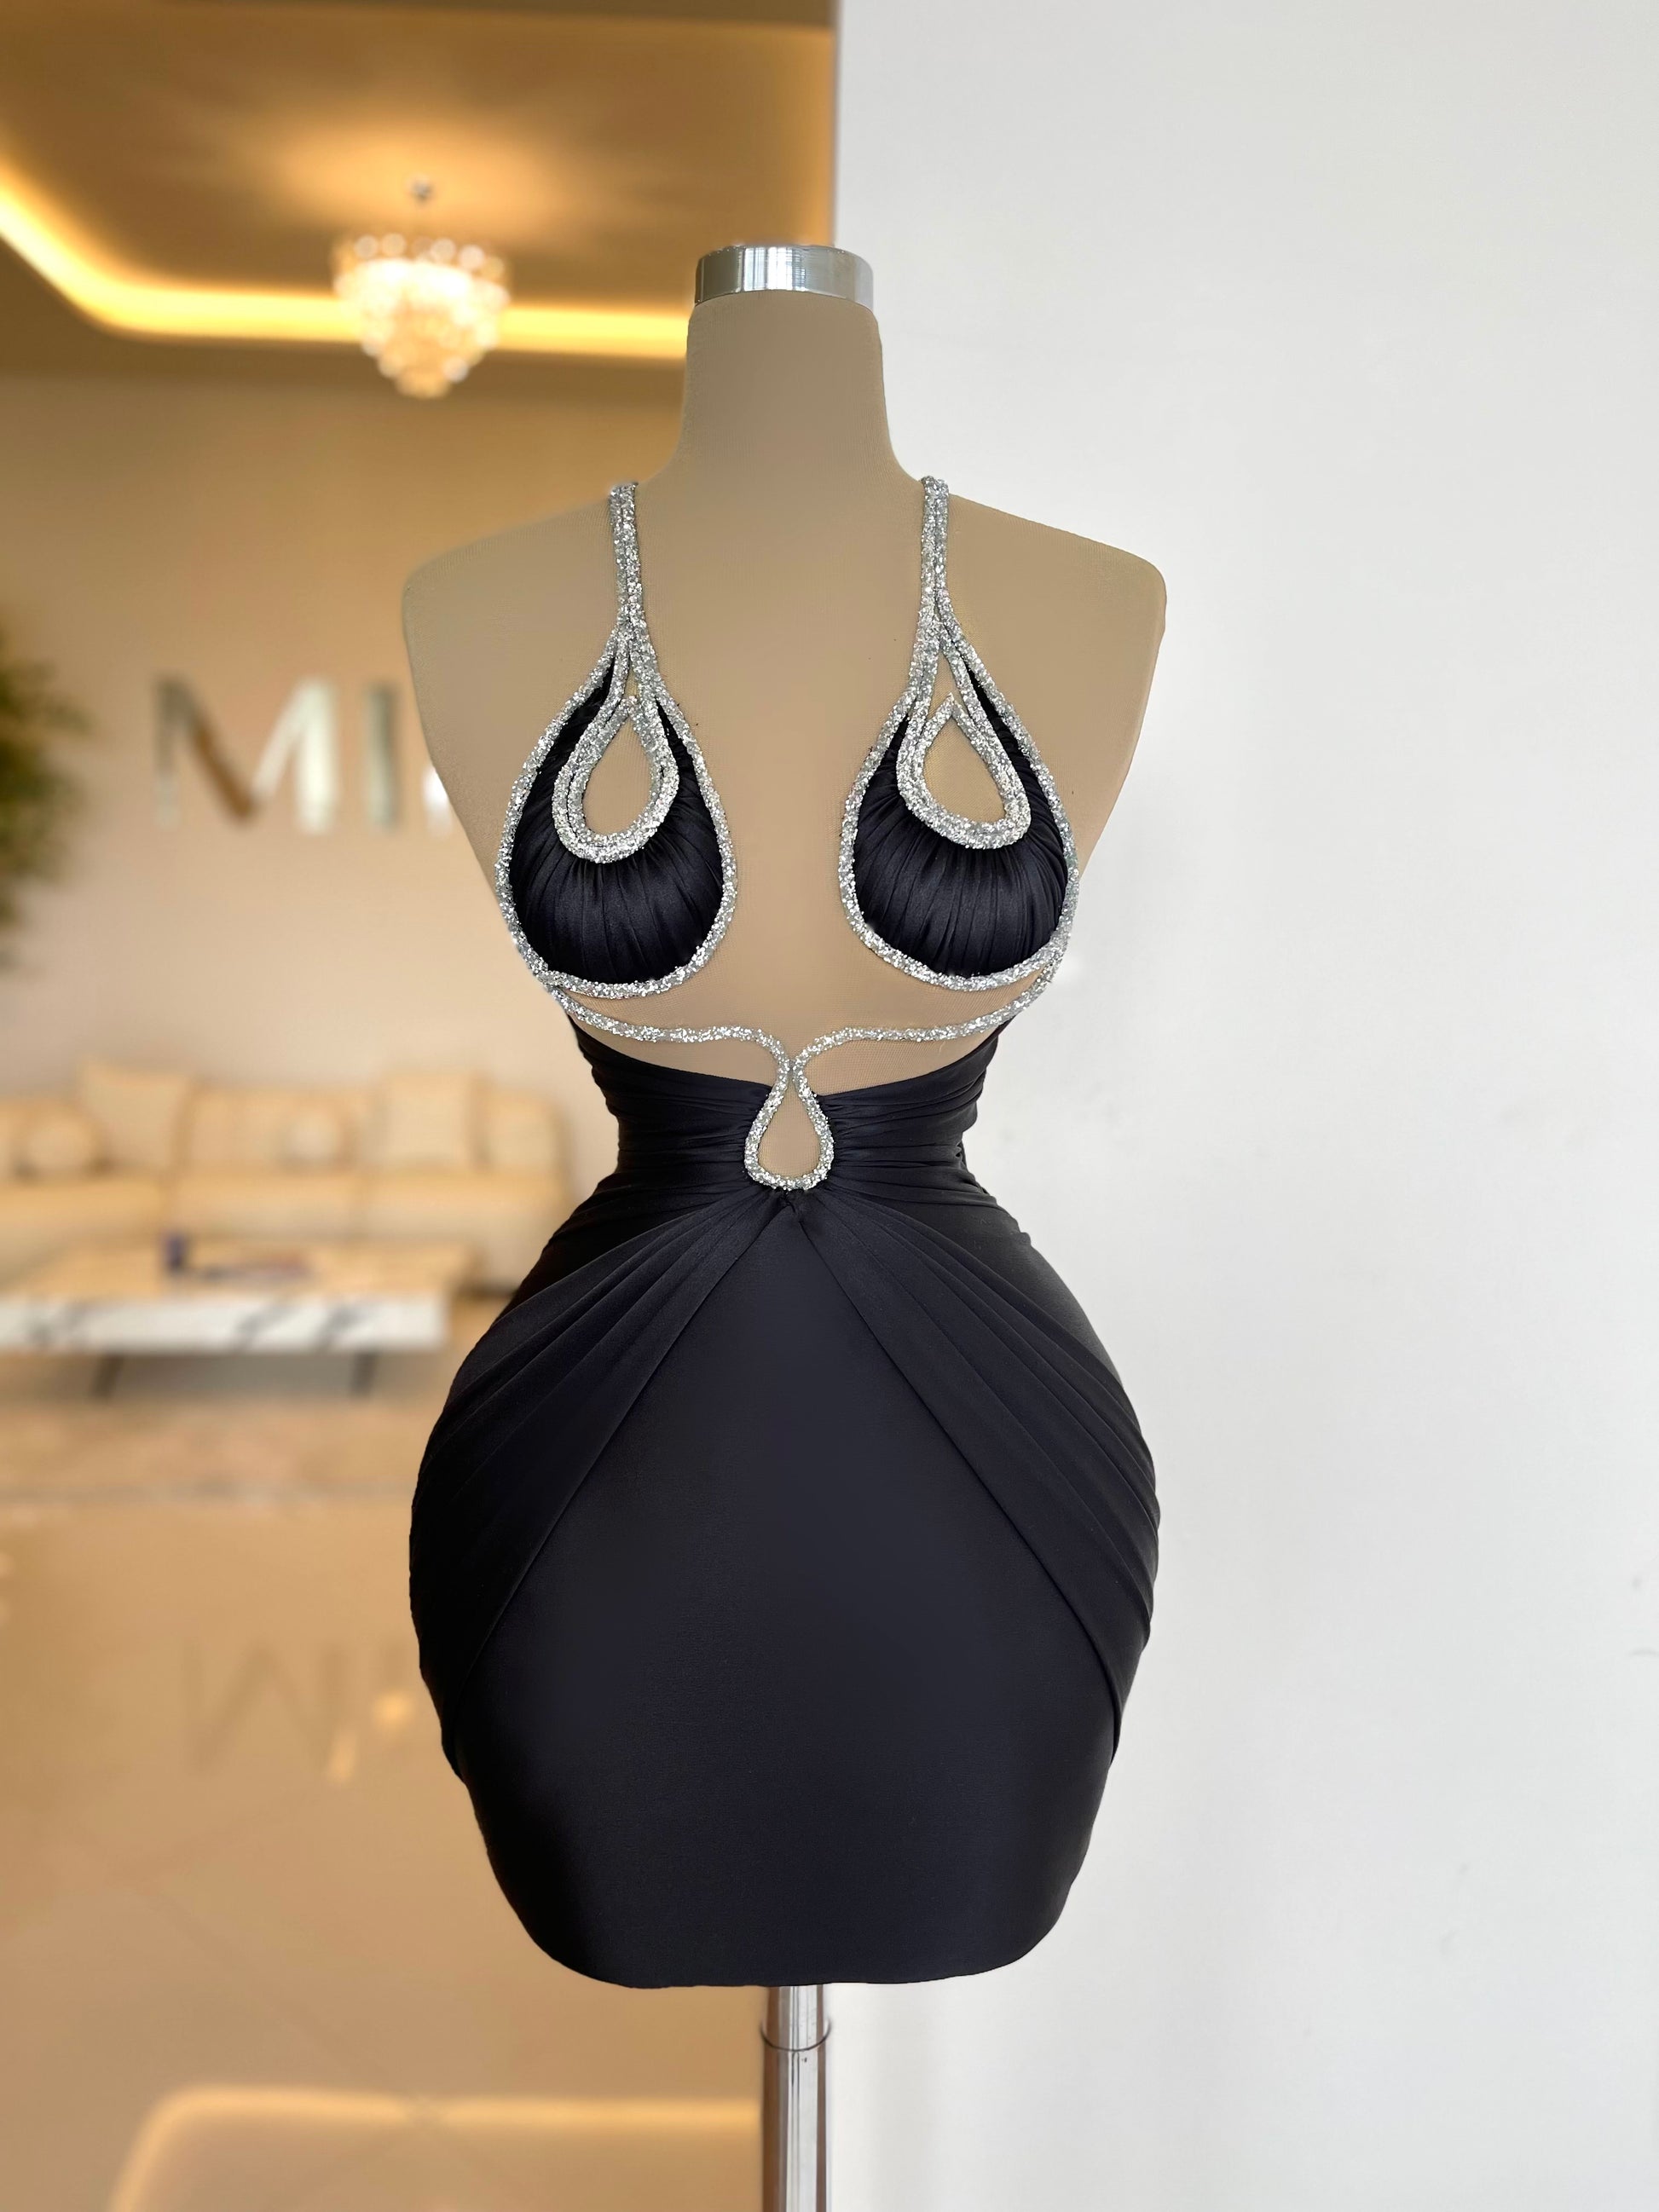 Ursula - Minna Fashion